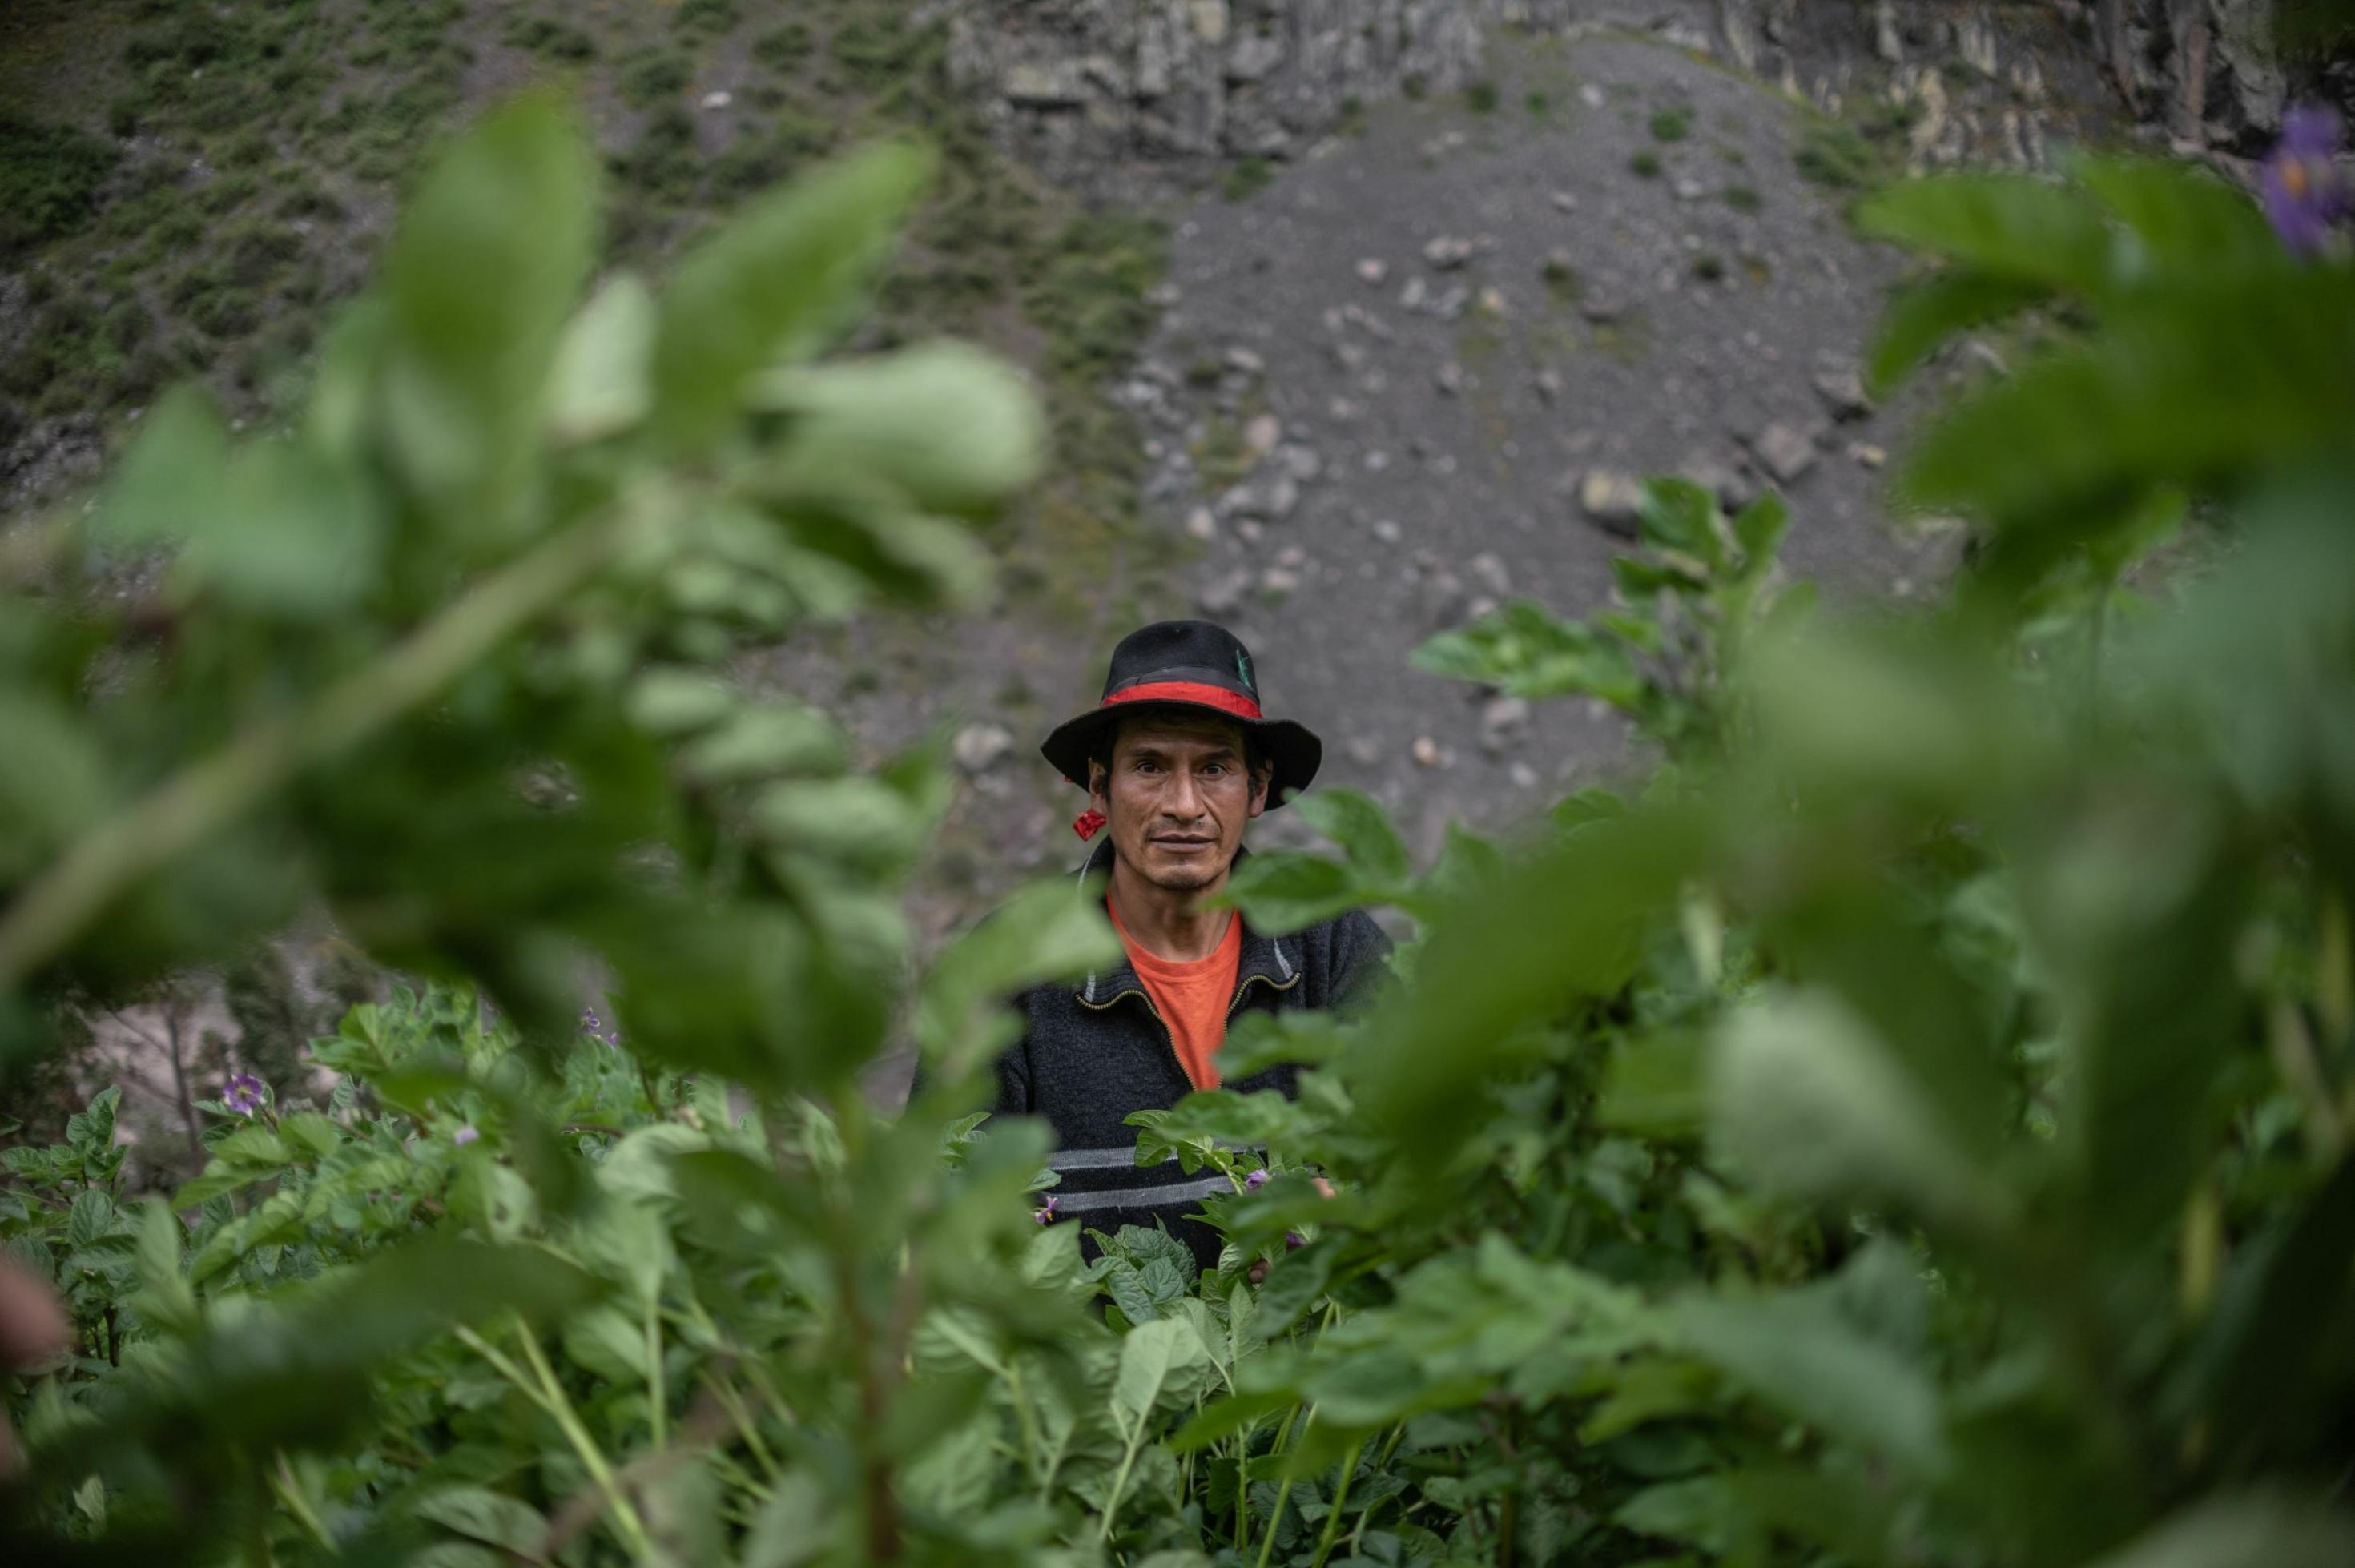 In der Mitte des Fotos das Gesicht eines braunhäutigen Mannes mit schwarzem Hut mit rotem Band, er ist eingerahmt von grünen Pflanzen, blühenden Kartoffeln